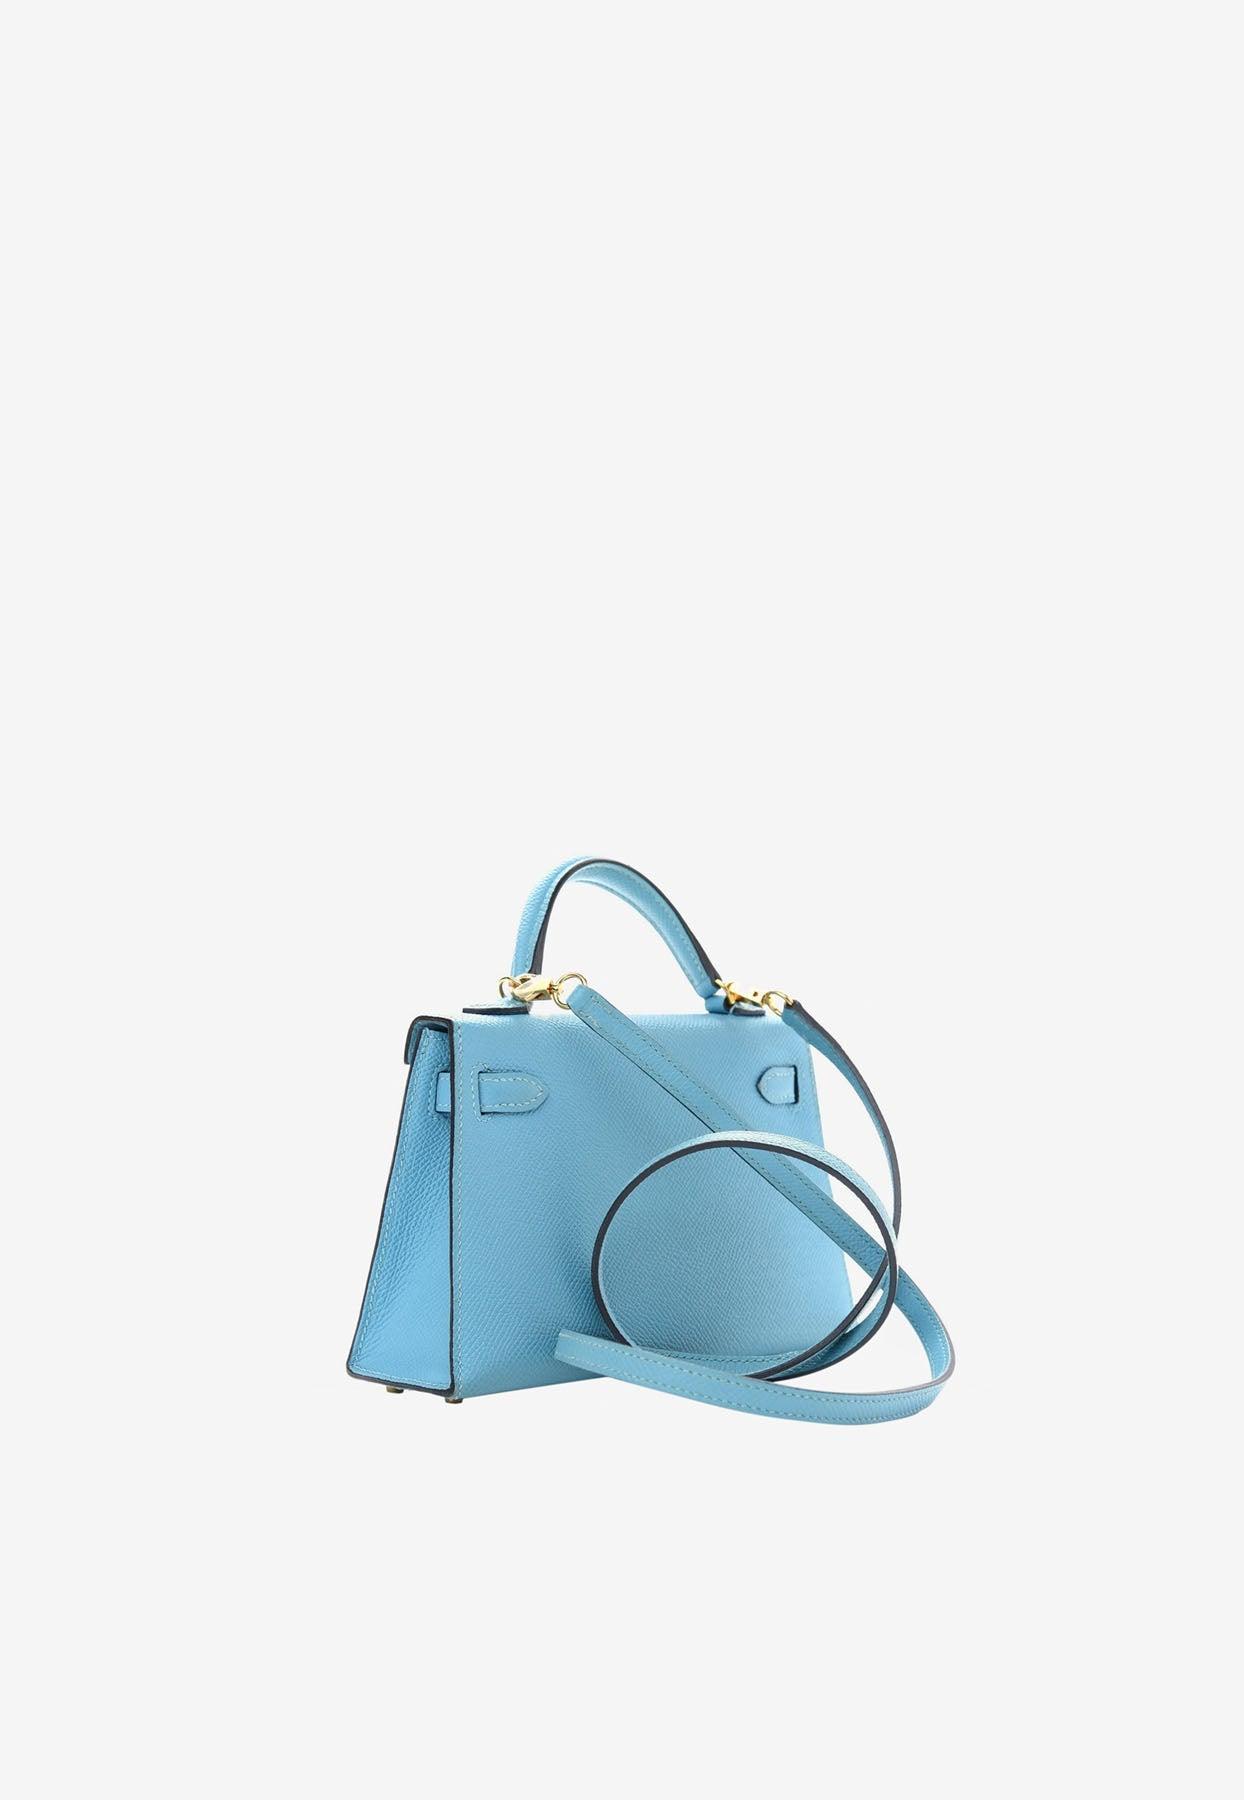 Hermès Mini Kelly Sellier 20 Top Handle Bag In Bleu Brume, Vert